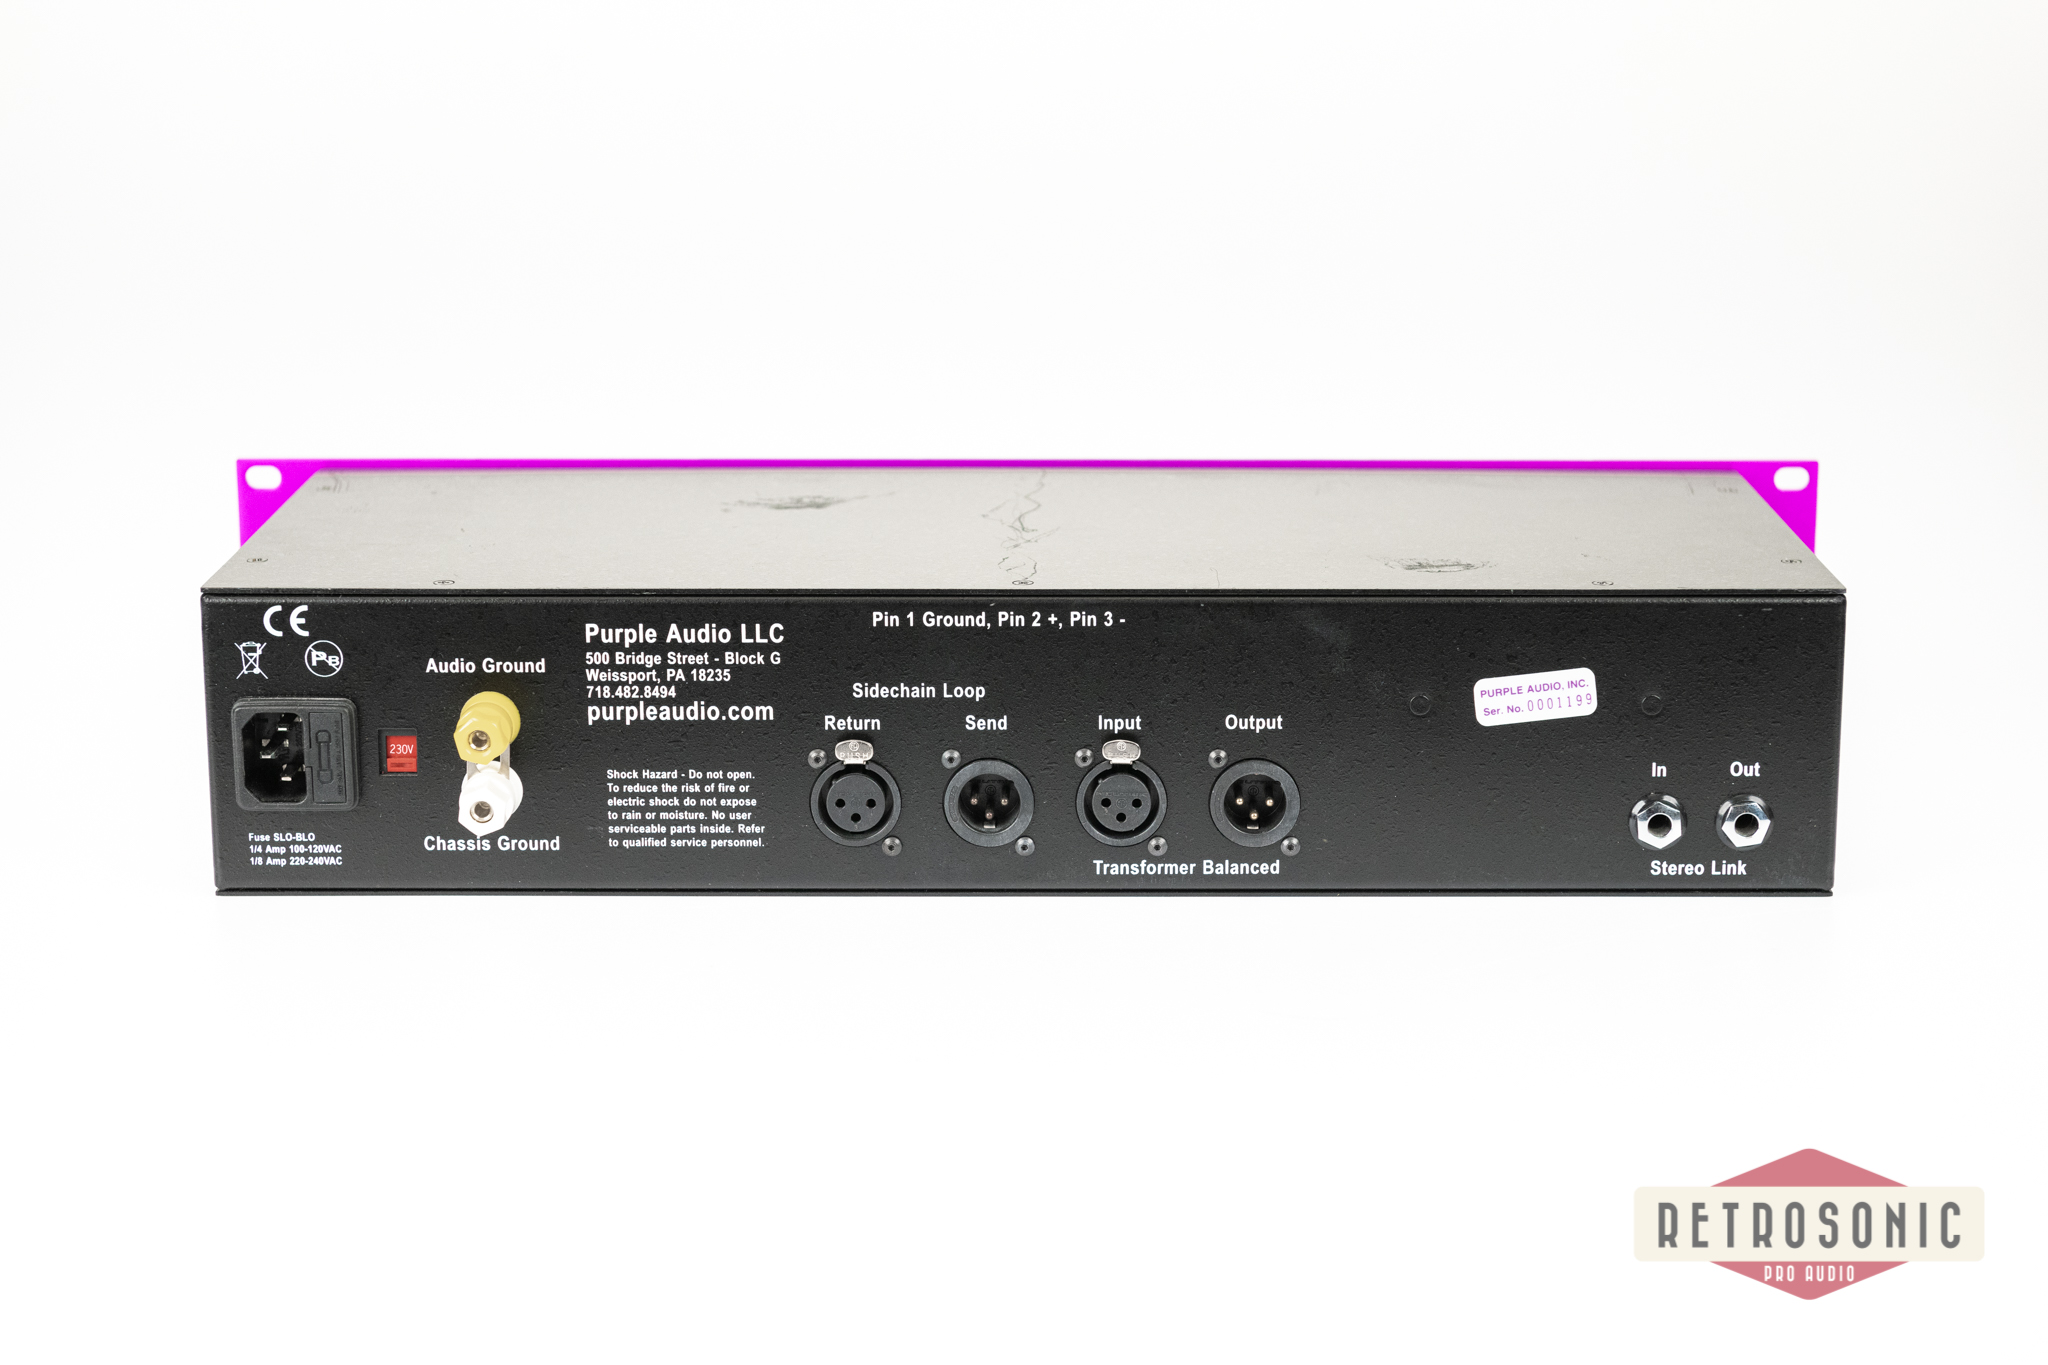 Purple Audio MC77 Compressor